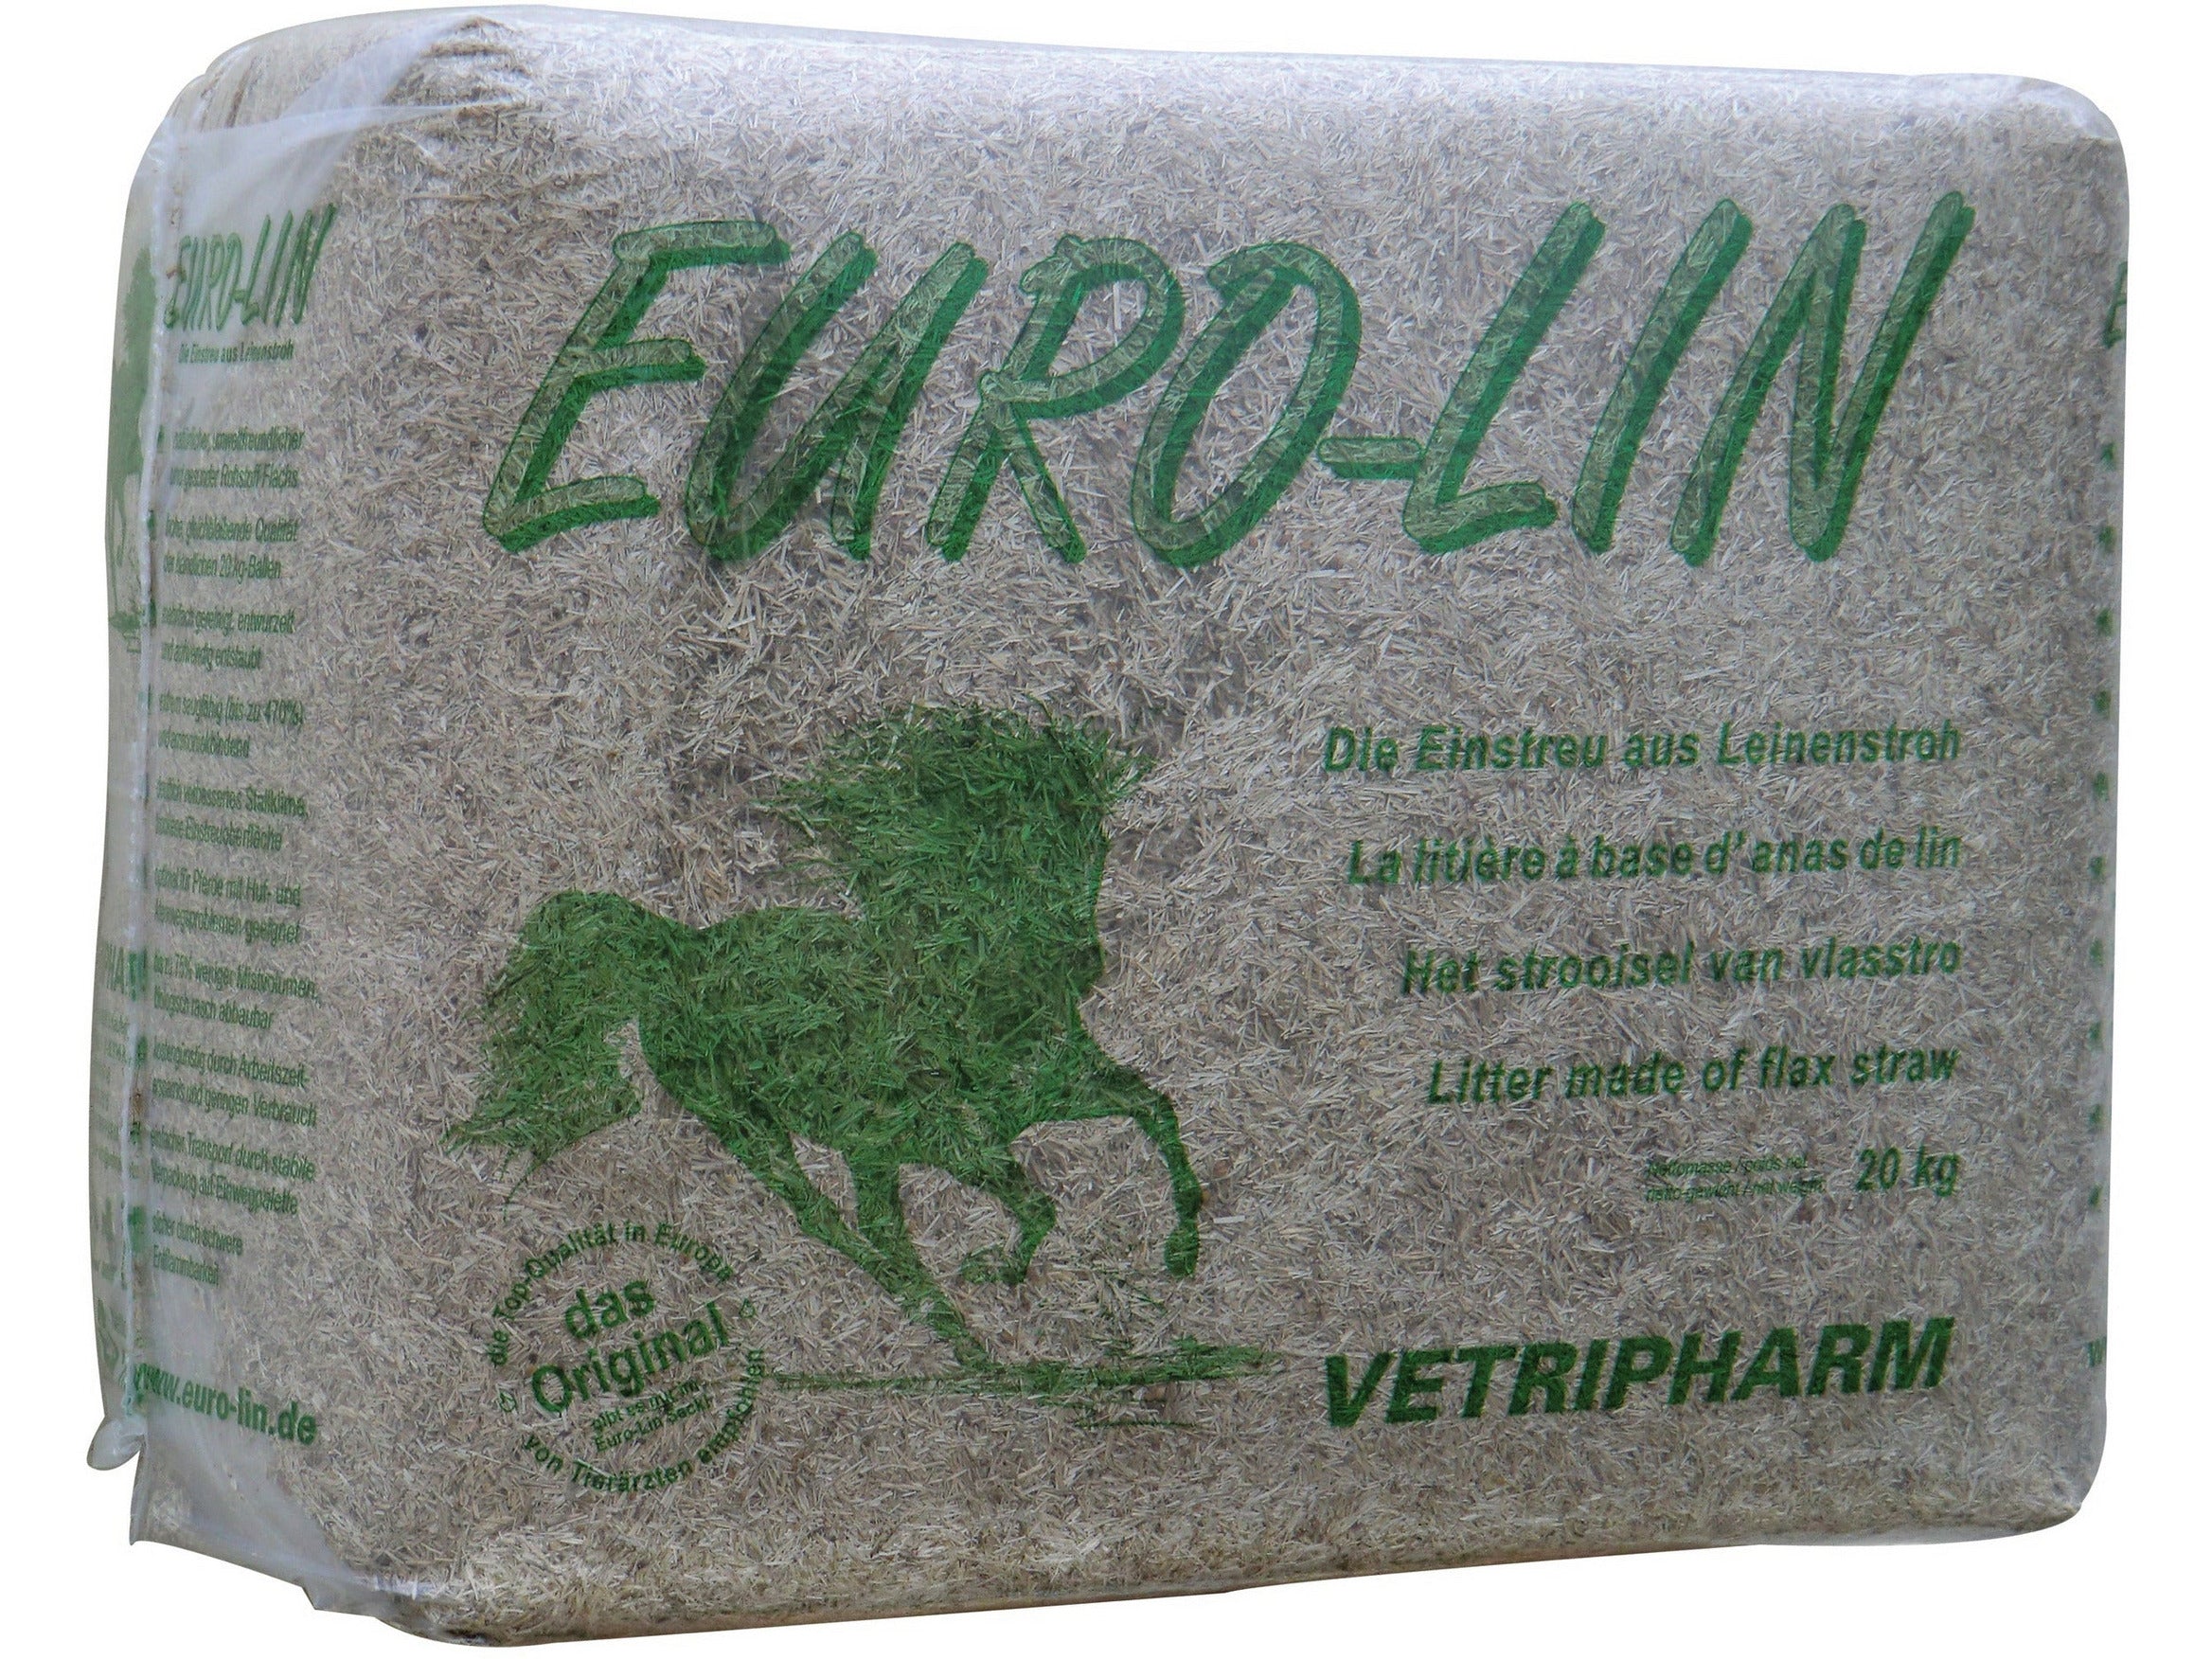 EURO-LIN Lein-Einstreu für Pferde von Vetripharm – Leinenstroh aus natürlichem Flachs